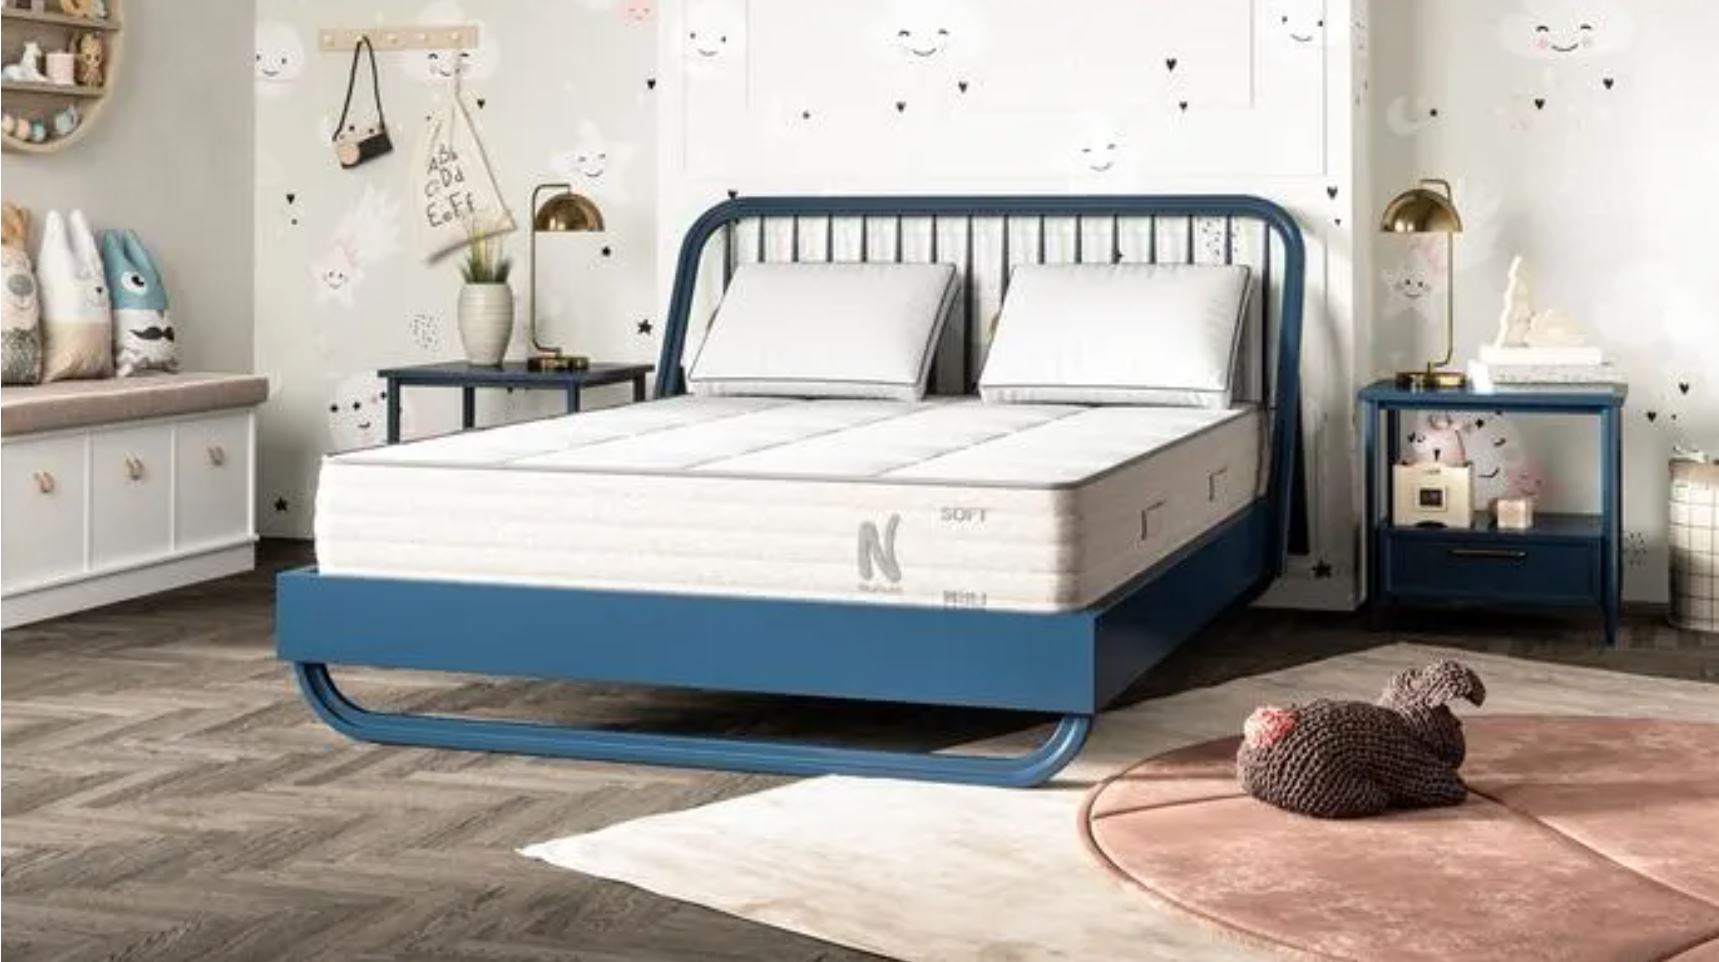 best children's mattress nolah nurture 10 inch